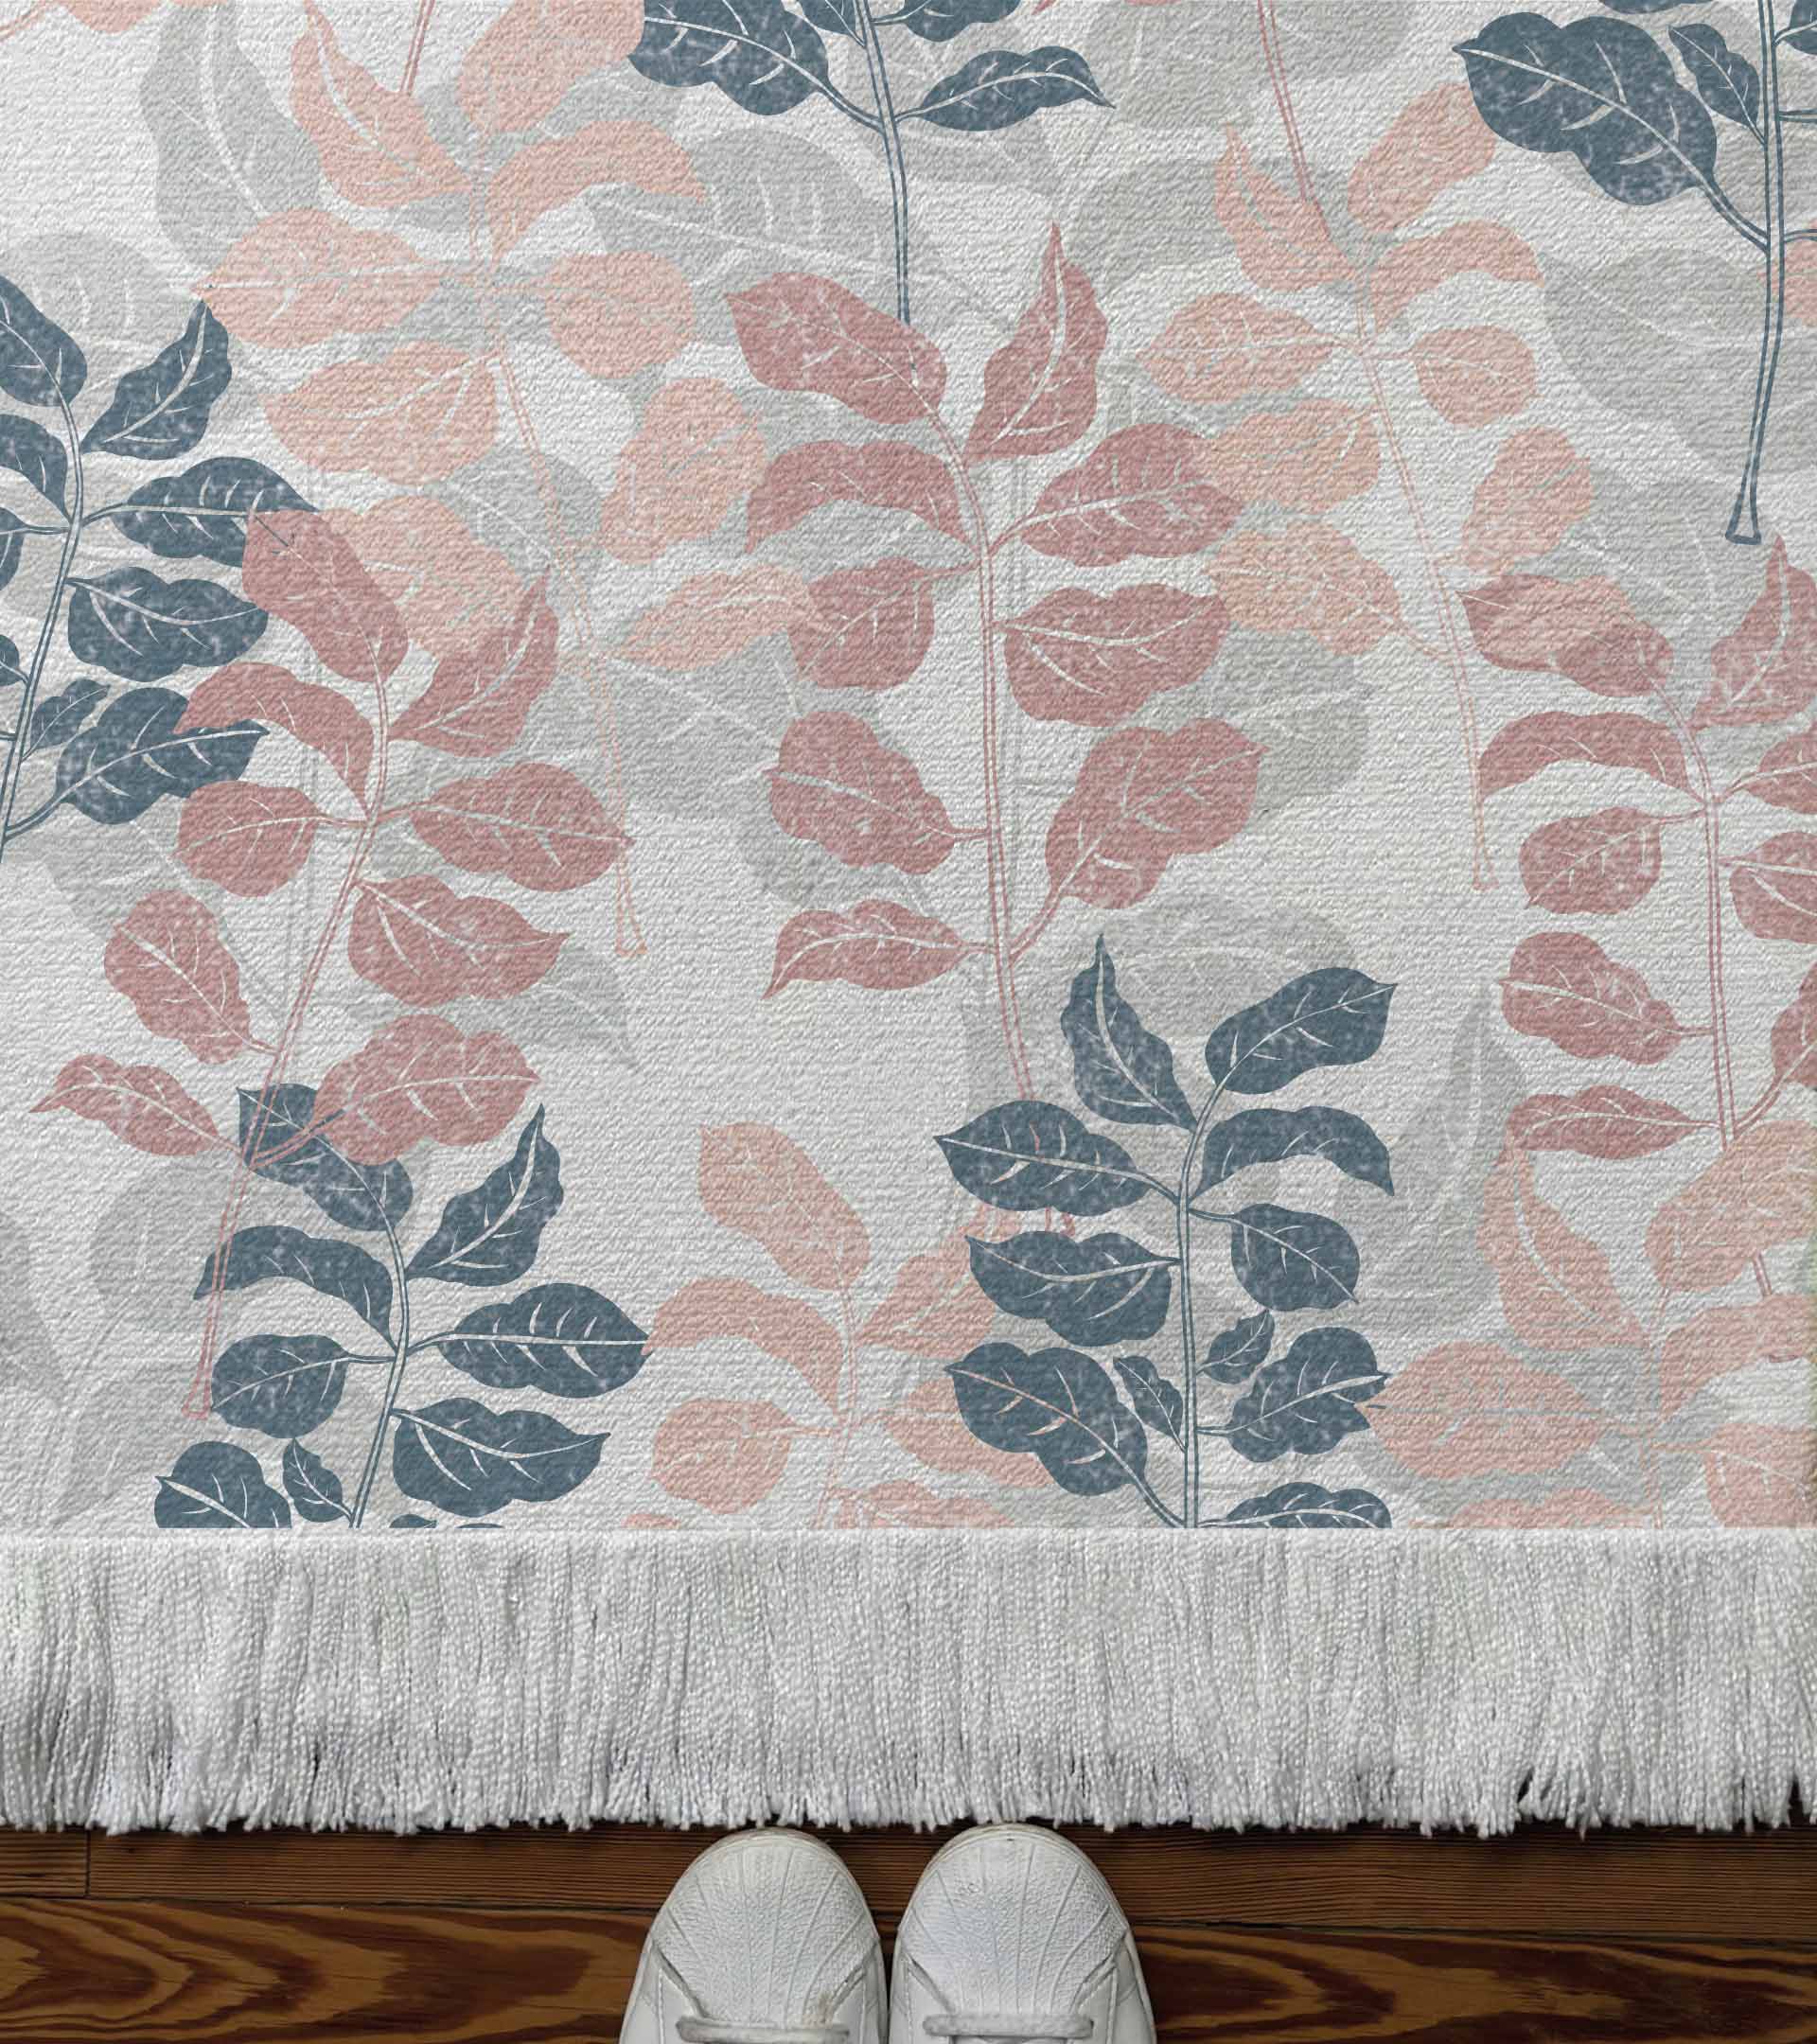 Alfombra tejida diseño botanico con ramas y hojas de color rosado, azul y gris